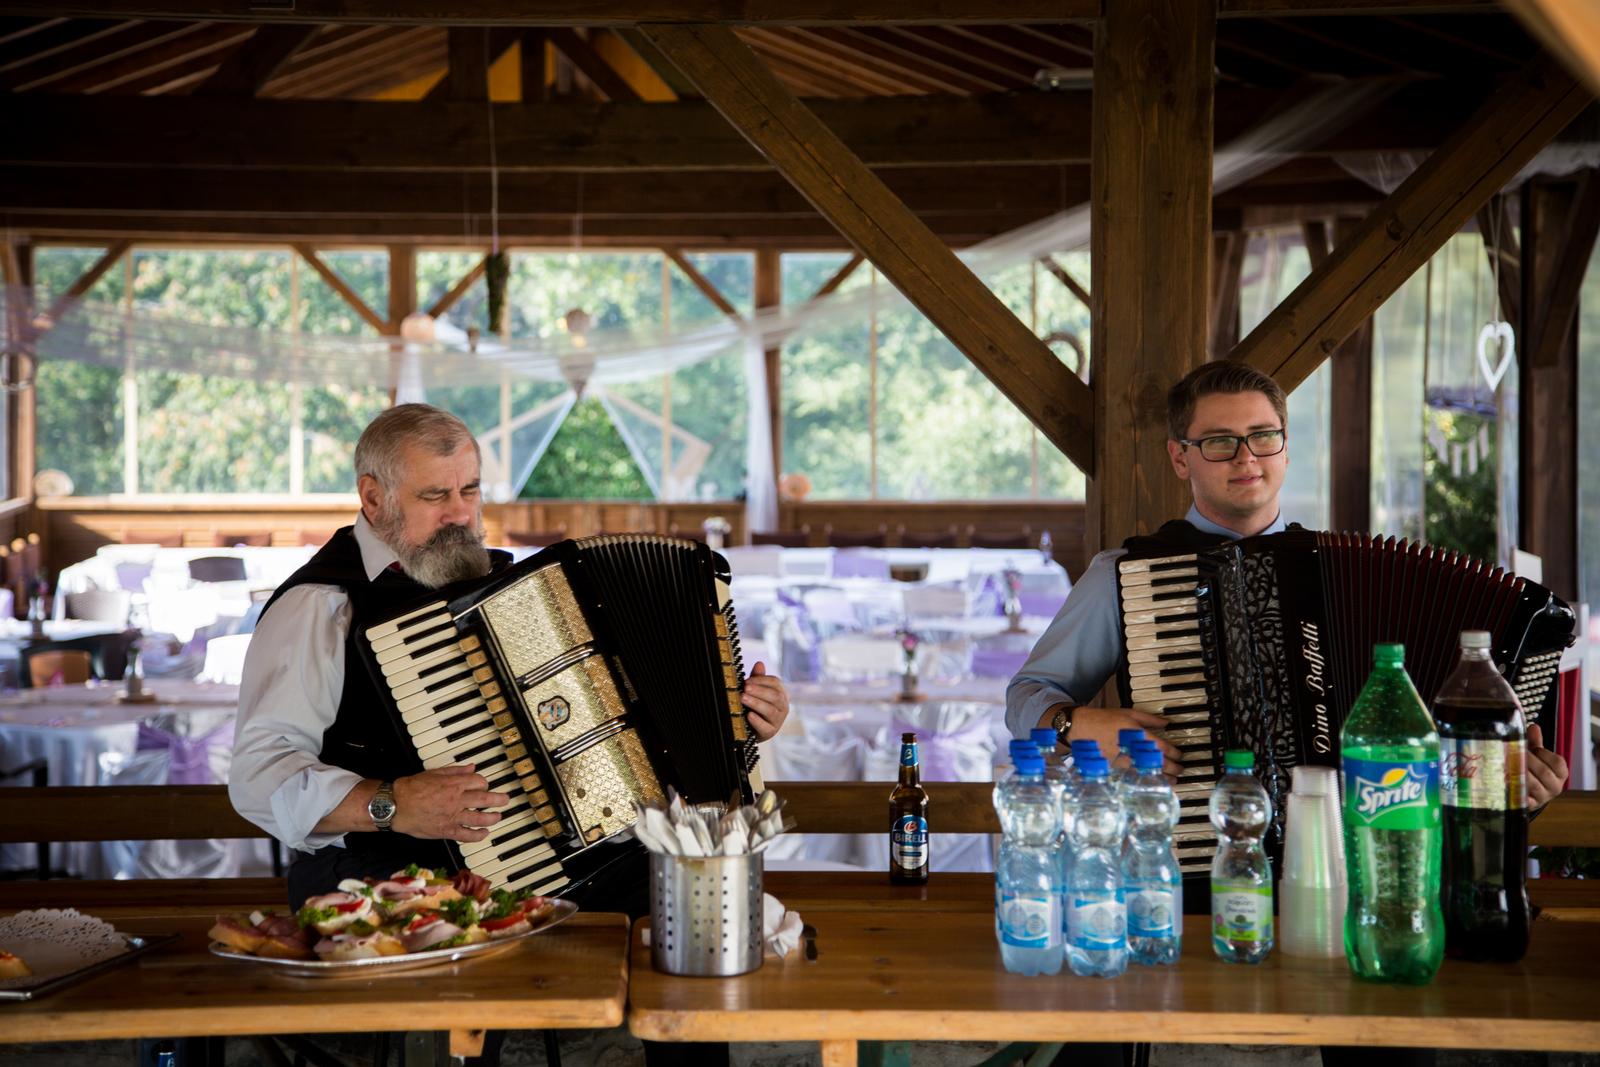 Svatba Jana a Lukáš 9.9.2016 - do předrautu hráli úžasní harmonikáři Ježci